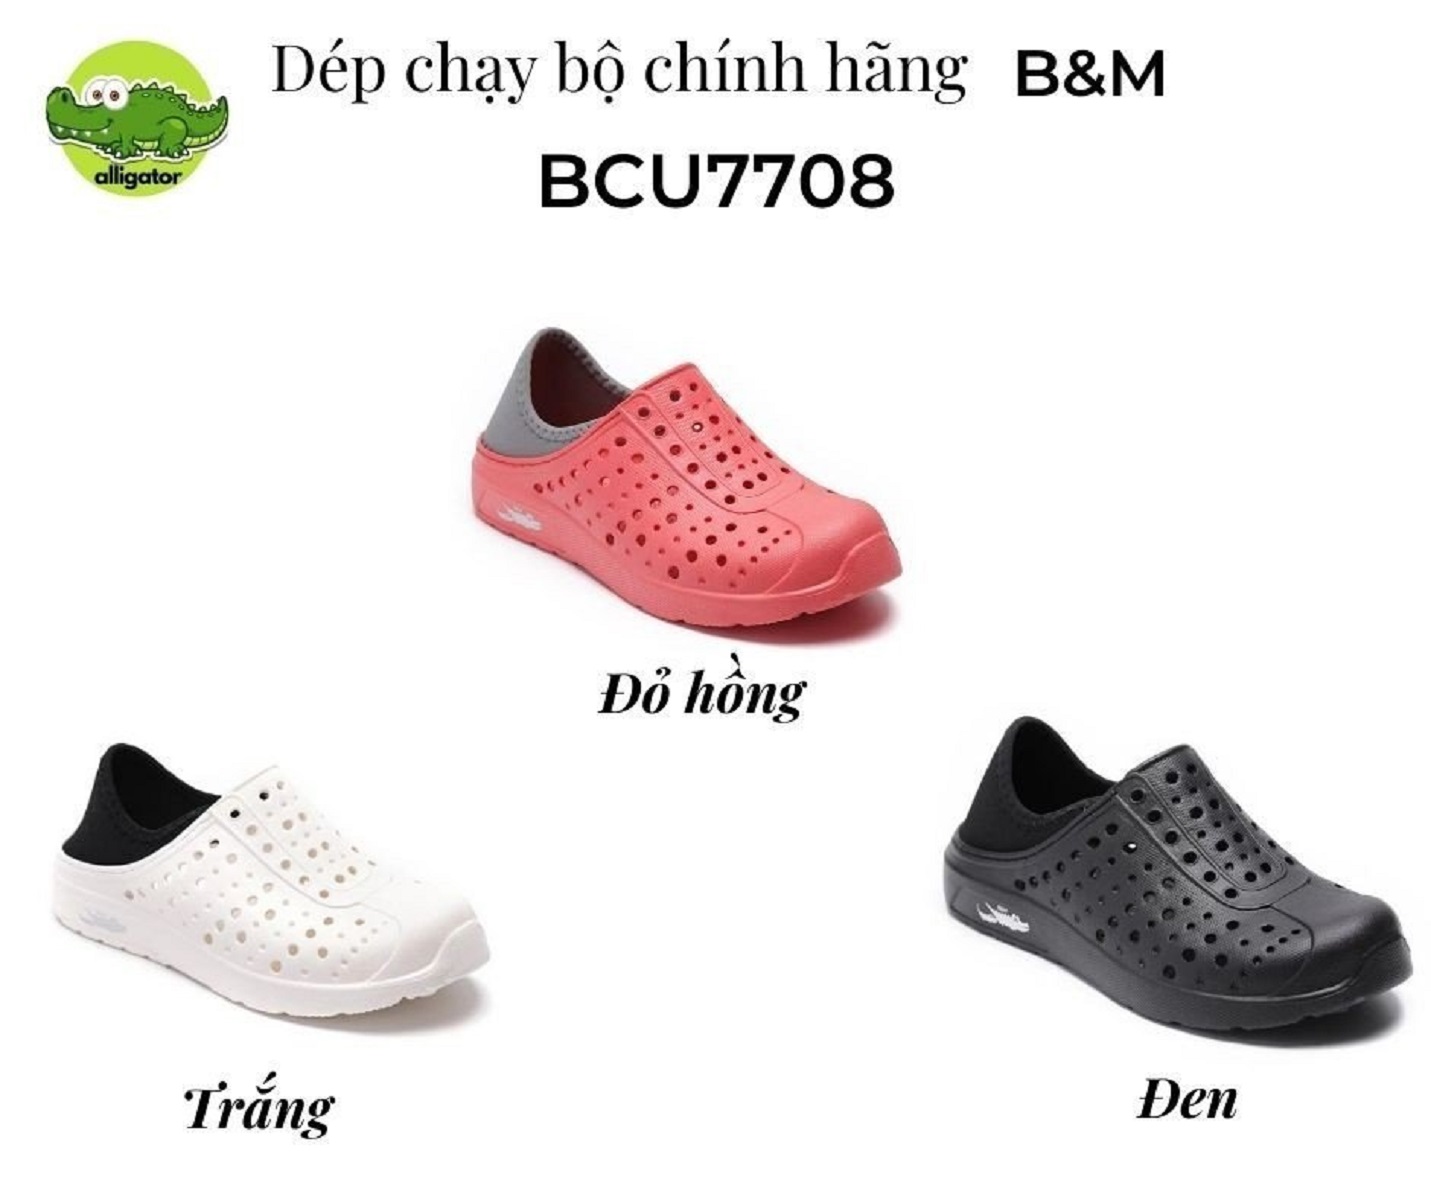 Dép chạy bộ chính hãng, Chính hãng B&M, nhập khẩu Đài Loan, Mã BCU7708